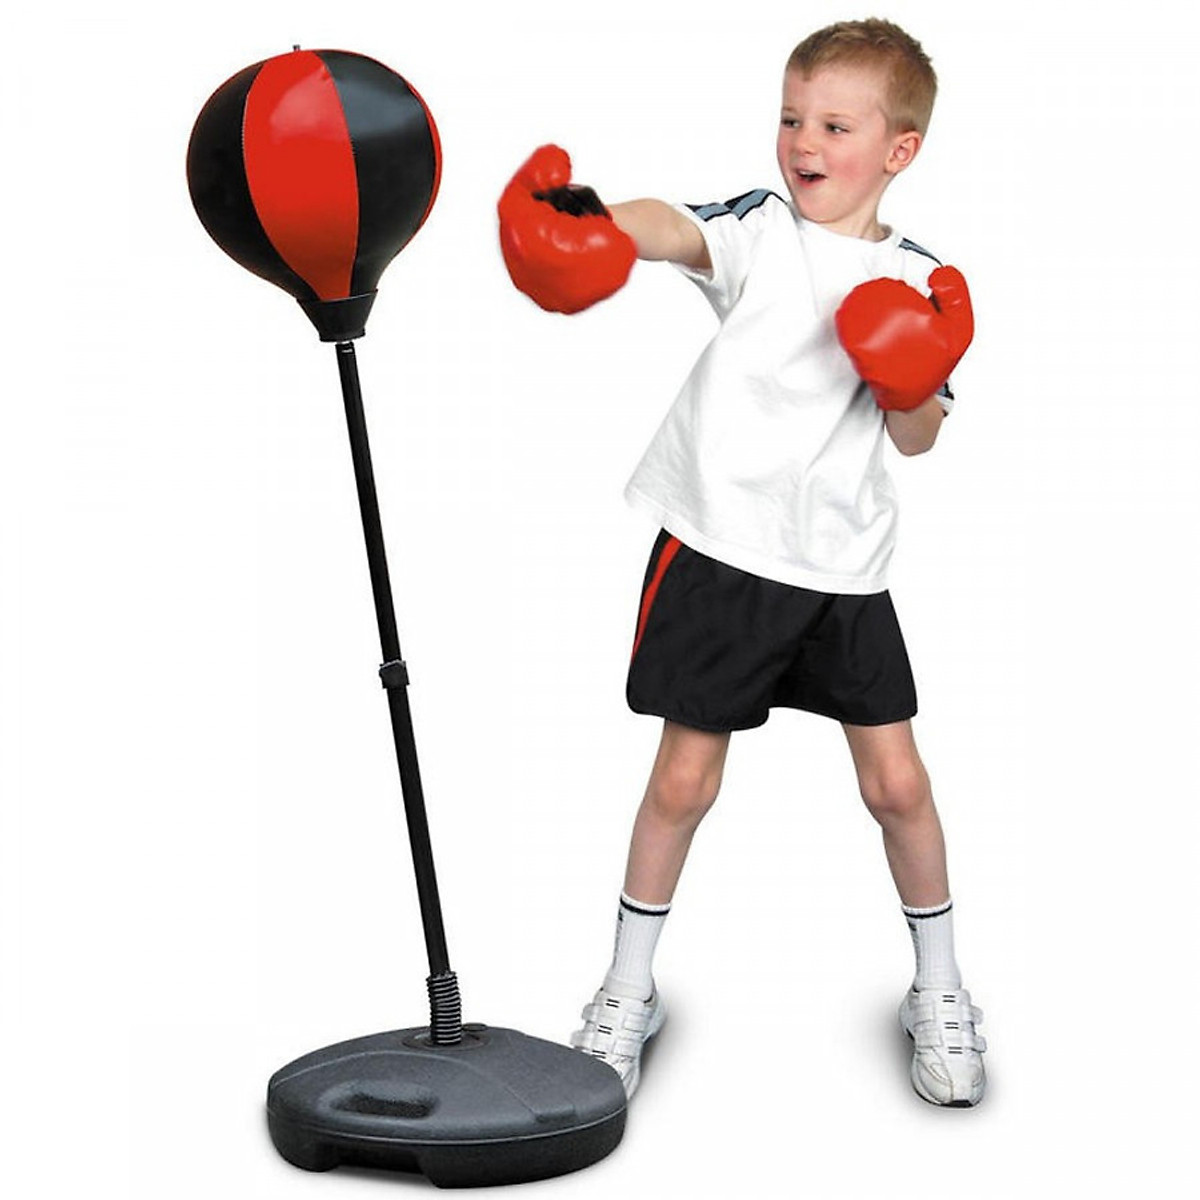 Đấm bốc trẻ em Boxing Suit - Bộ đồ tập đấm bốc boxing chuyên nghiệp cho trẻ em